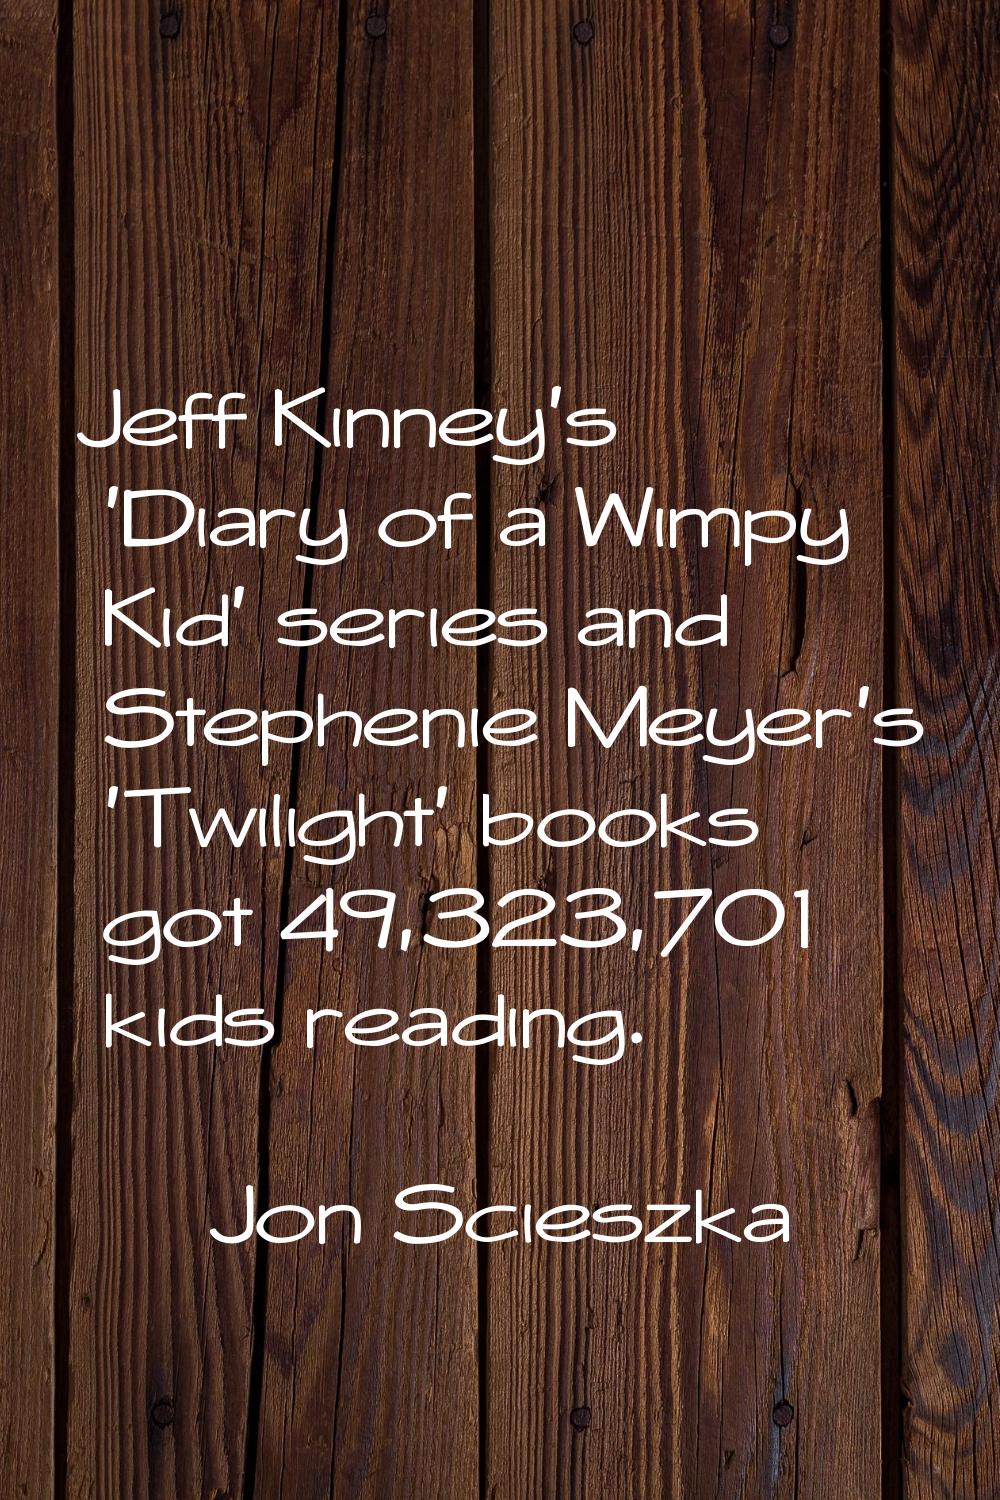 Jeff Kinney's 'Diary of a Wimpy Kid' series and Stephenie Meyer's 'Twilight' books got 49,323,701 k